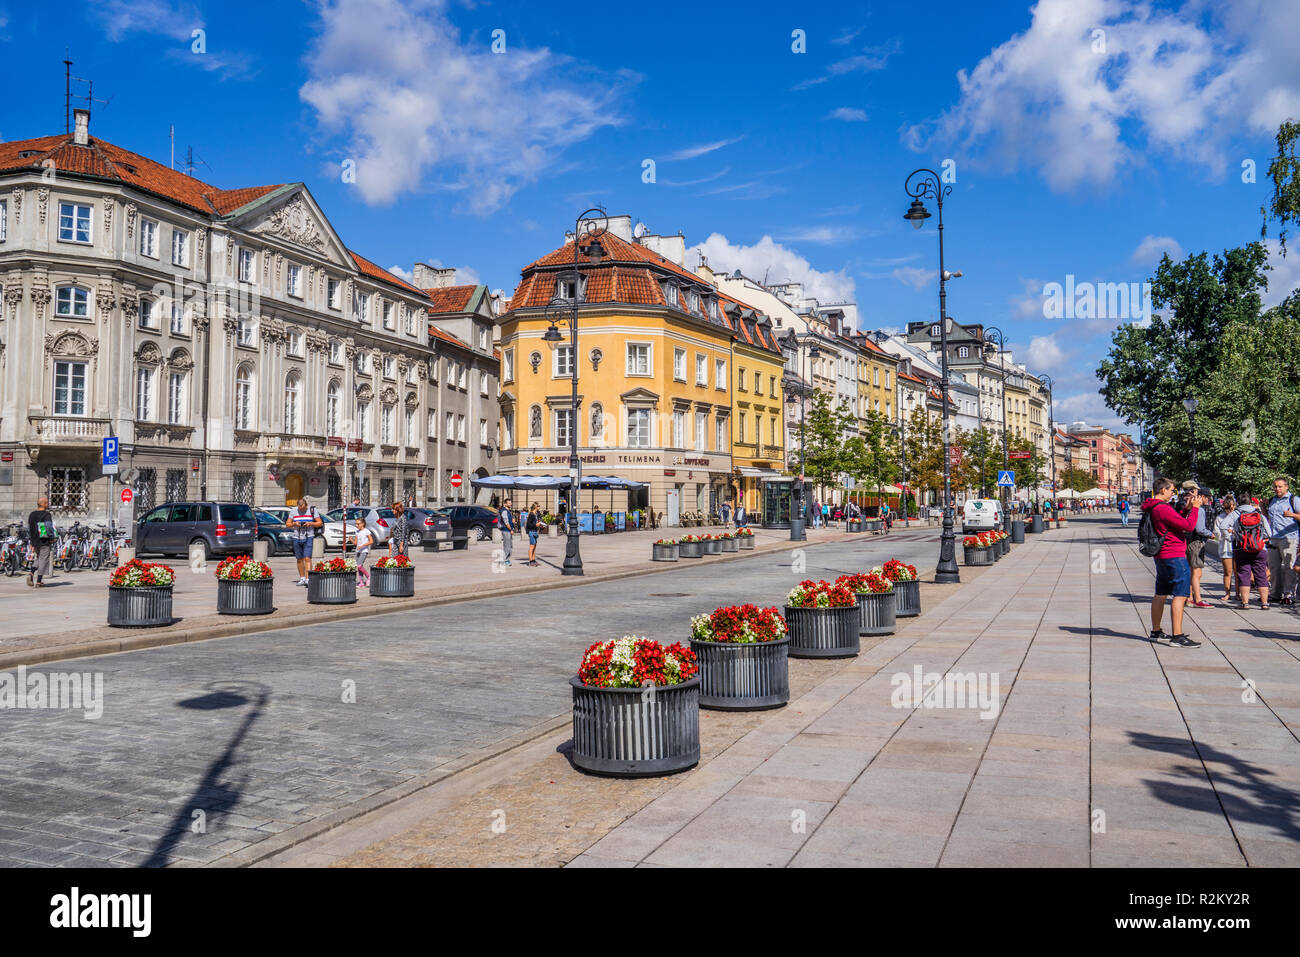 view of Krakowskie Przedmiescie, one of the best known and most prestigiuos streets of Poland's capital, Warsaw, Poland Stock Photo